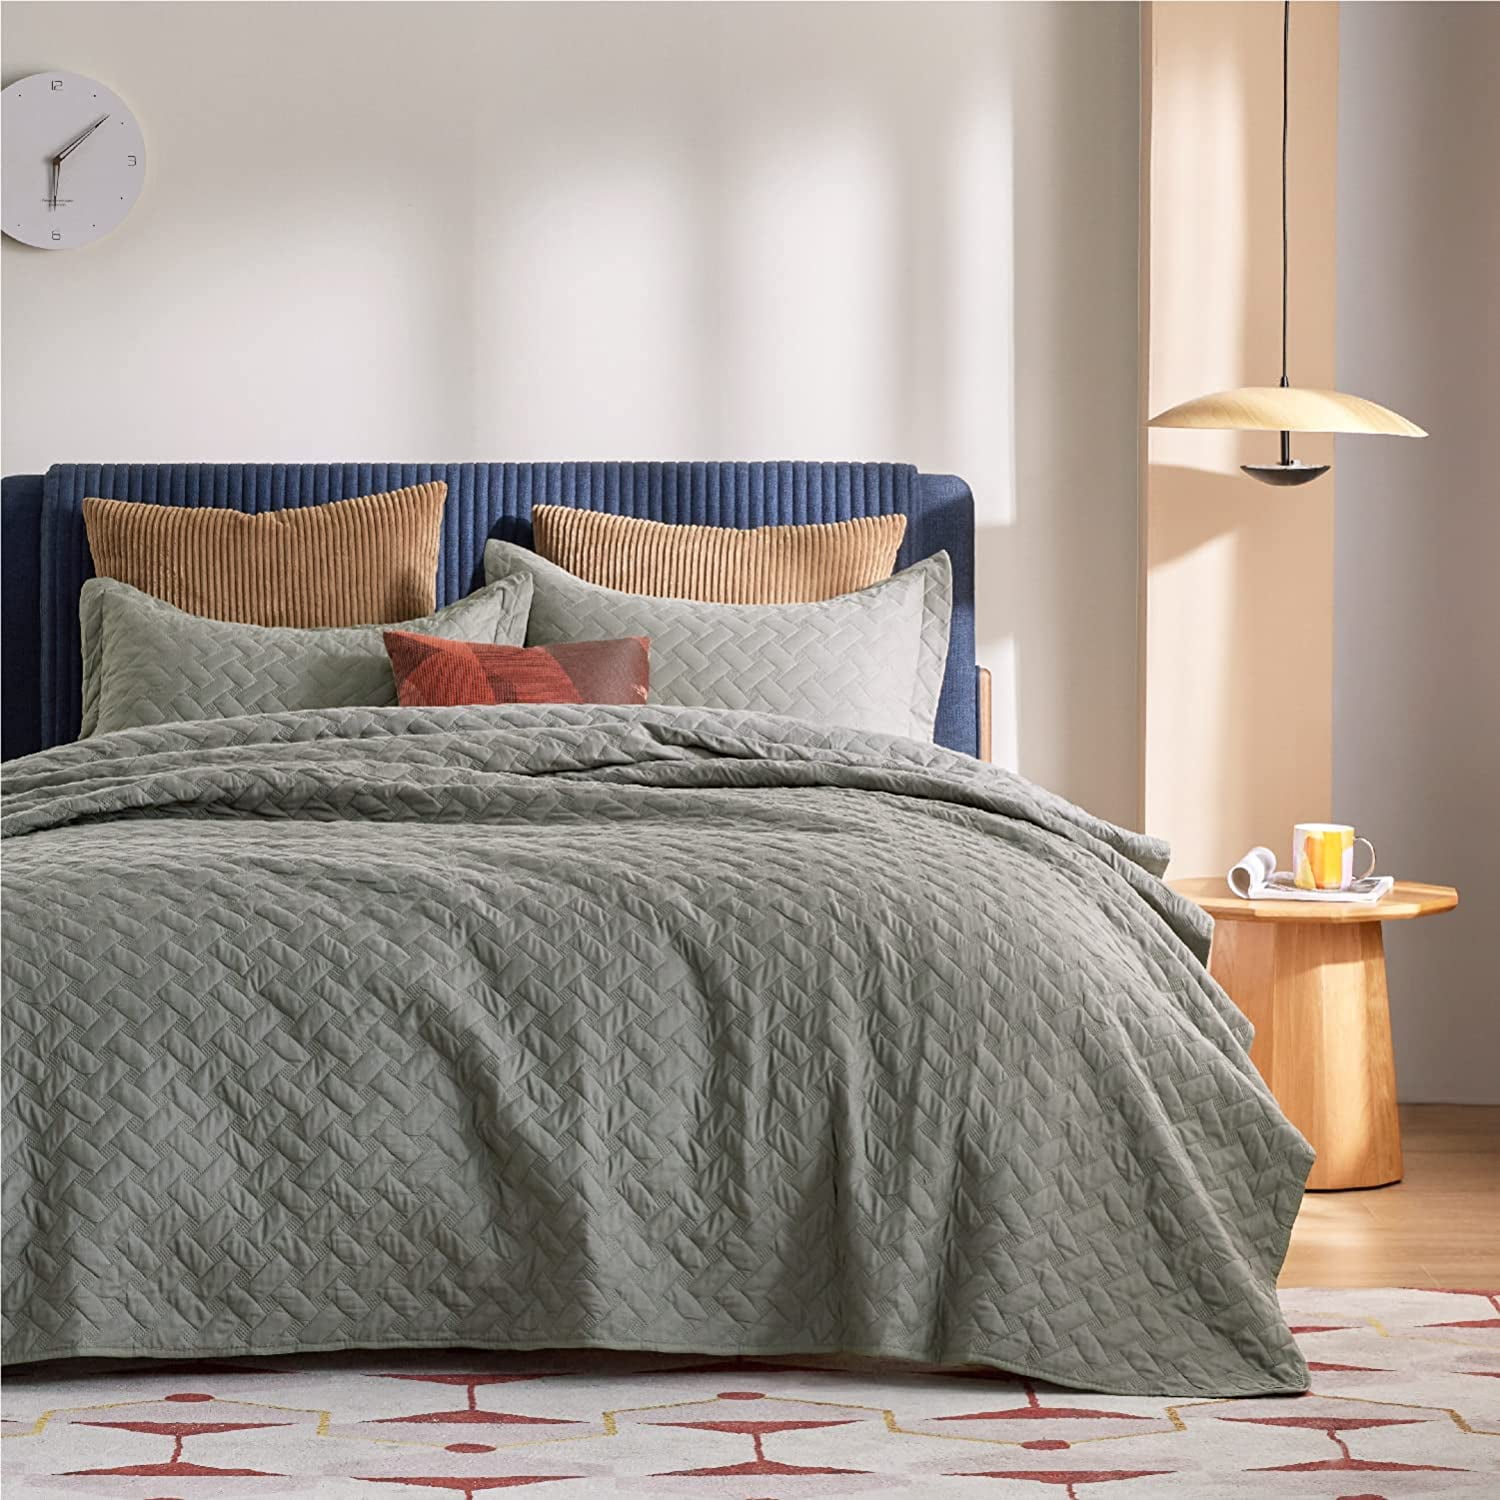 Bedsure Queen Quilt Bedding Set - Lightweight Summer Quilt Full/Queen - Grey  Bedspreads Queen Size - Bedding Coverlets for All Seasons (Includes 1 Quilt,  2 Pillow Shams) 